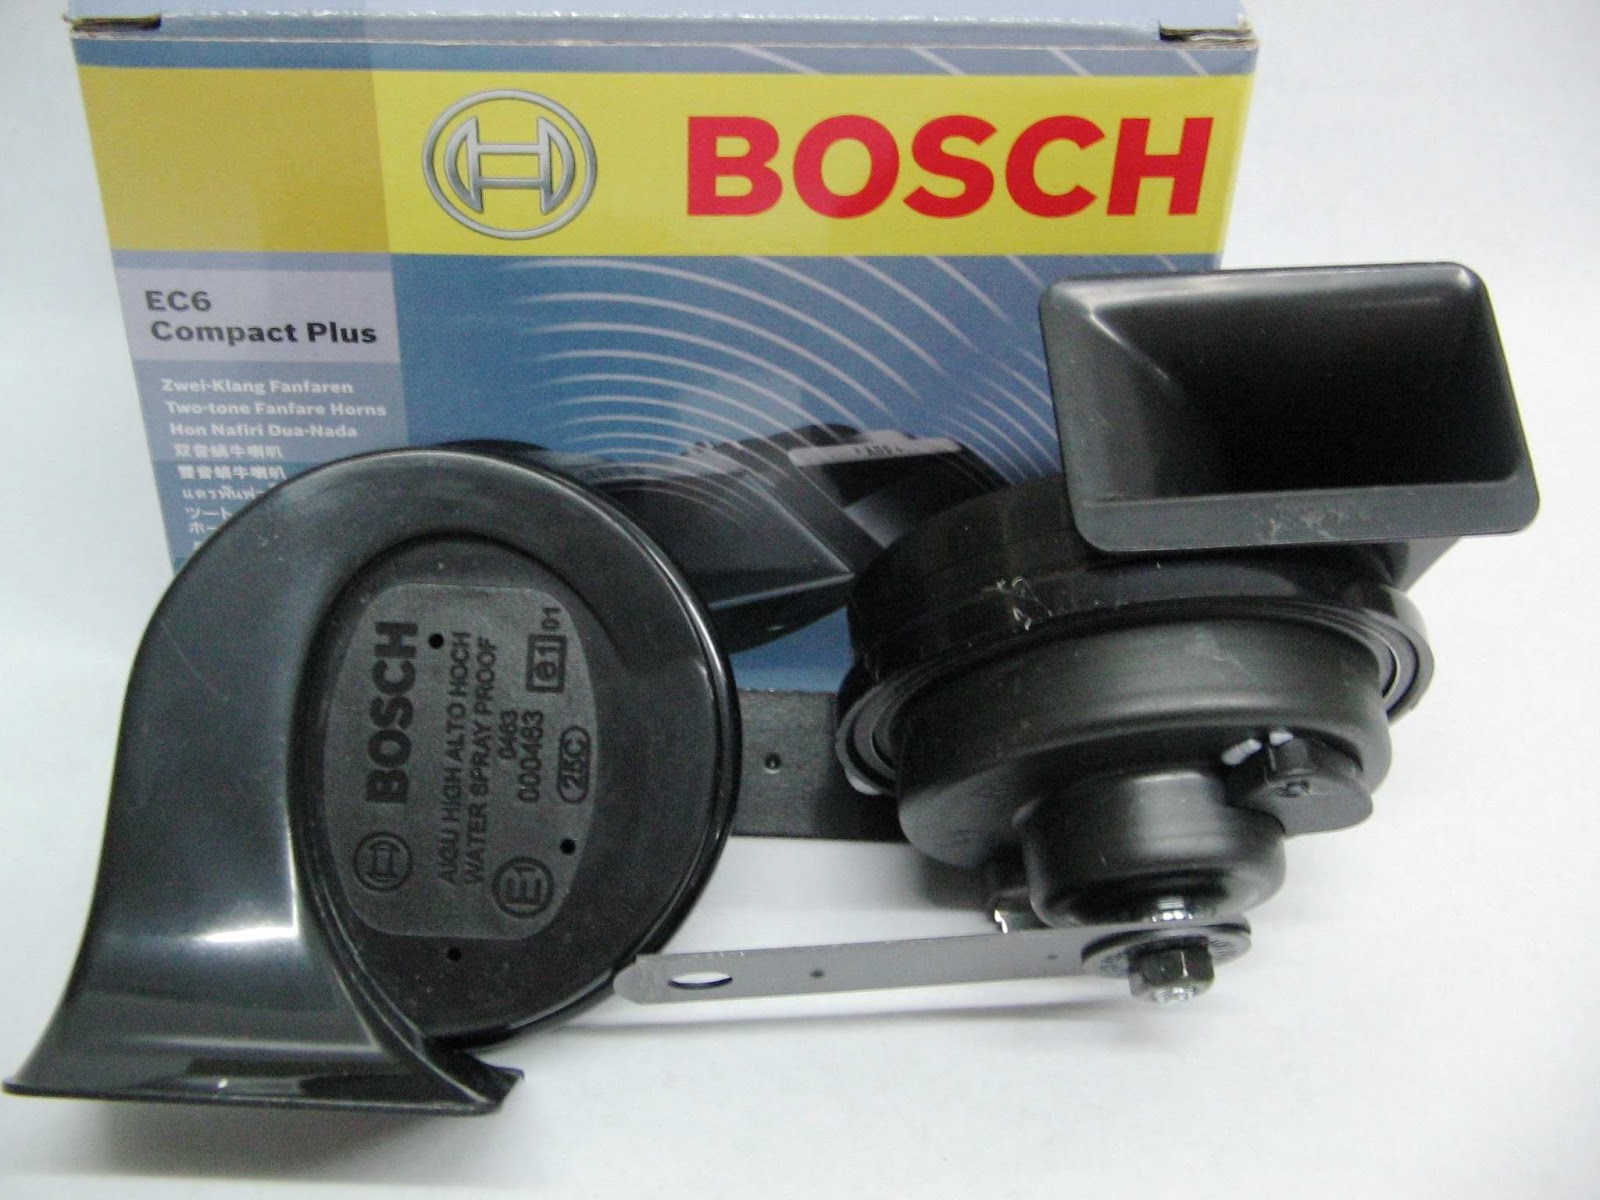 Bosch EC6 Compact Plus Fanfare Car Horn - Click Image to Close